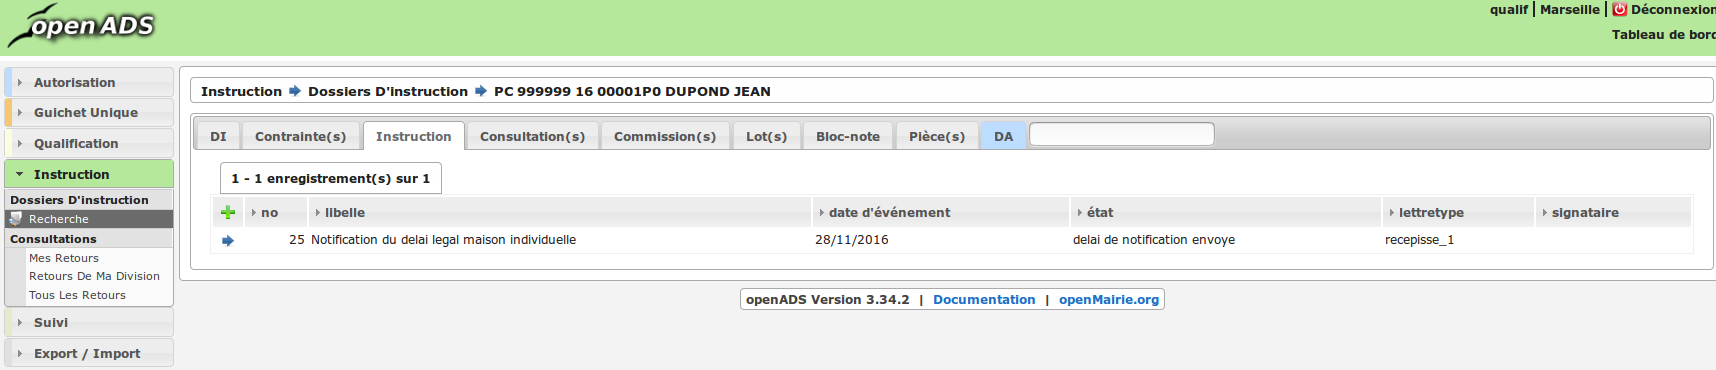 Publication de la version openADS 3.34.2